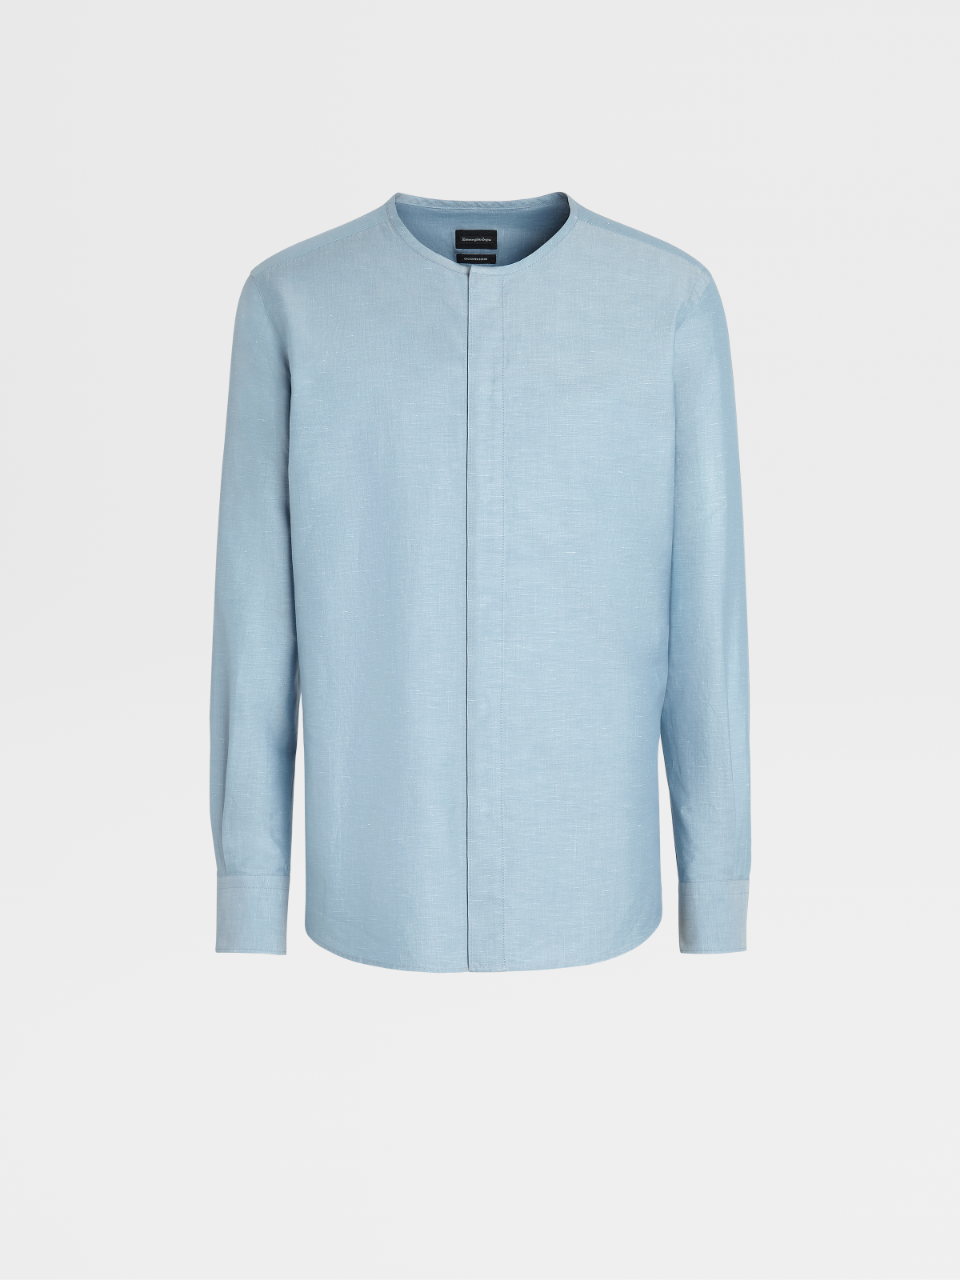 Avio Blue Cotton Linen and Silk Henley Shirt, Milano Regular Fit